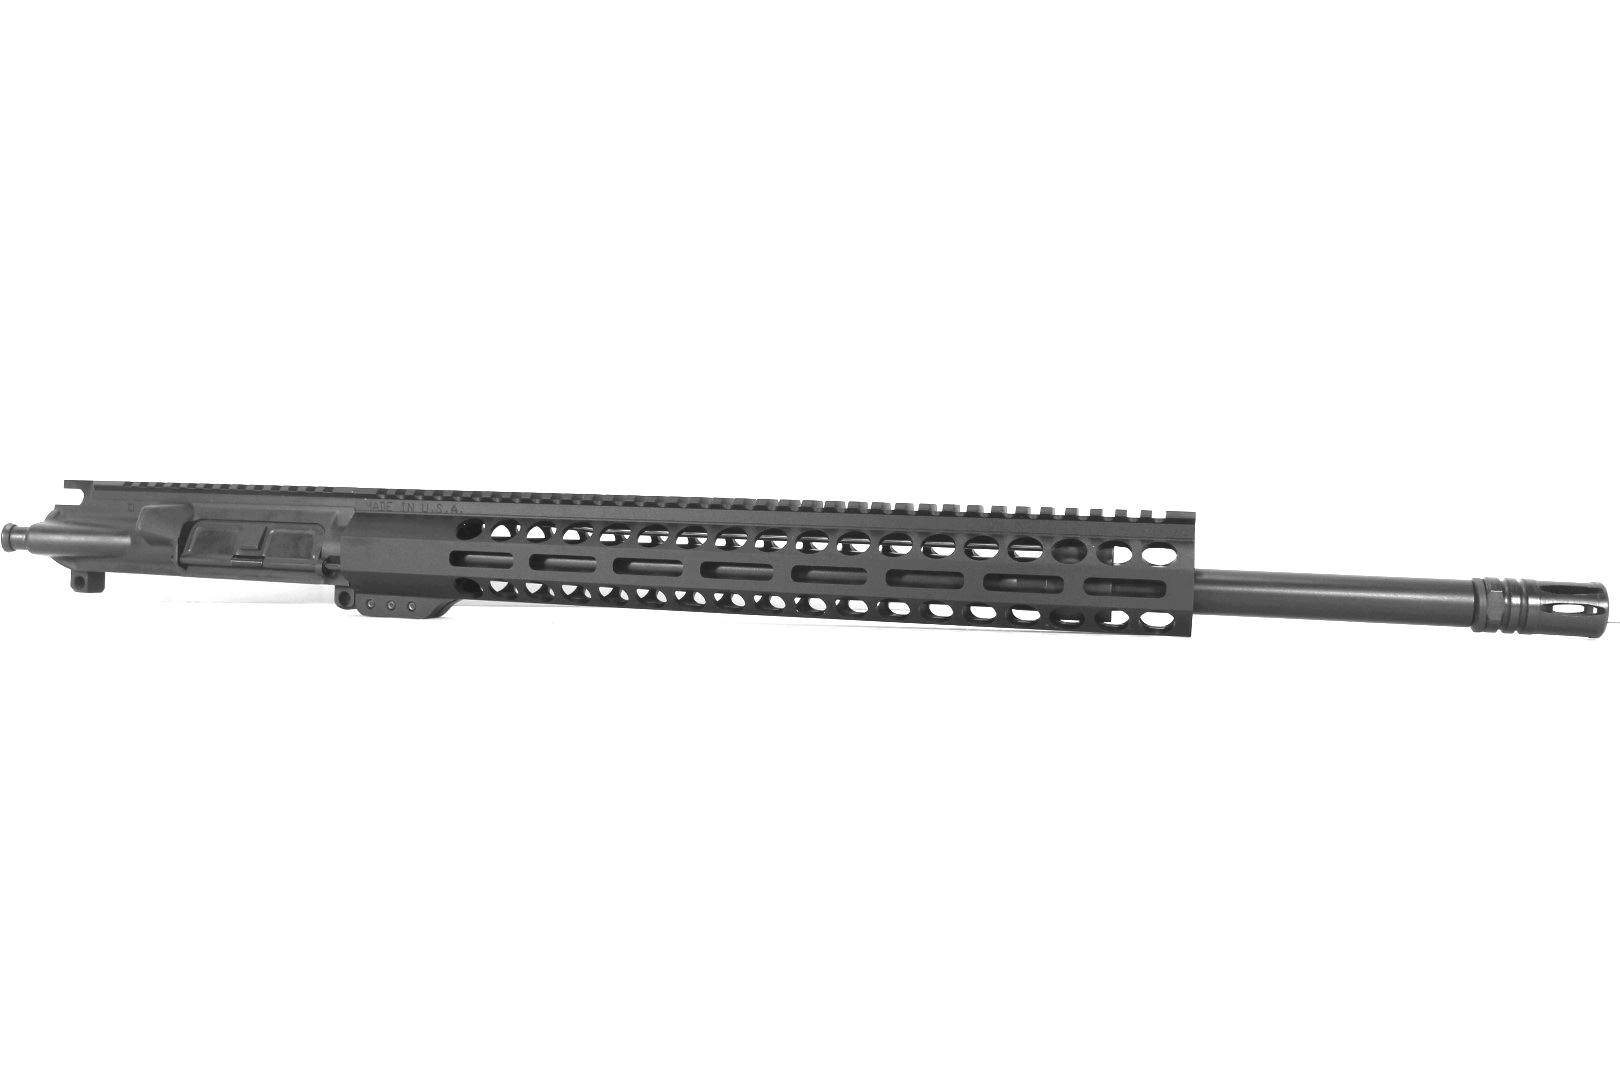 20 inch AR-15 AR15 6.5 Grendel Keymod M-LOK Melonite Upper with optional BCG/CH